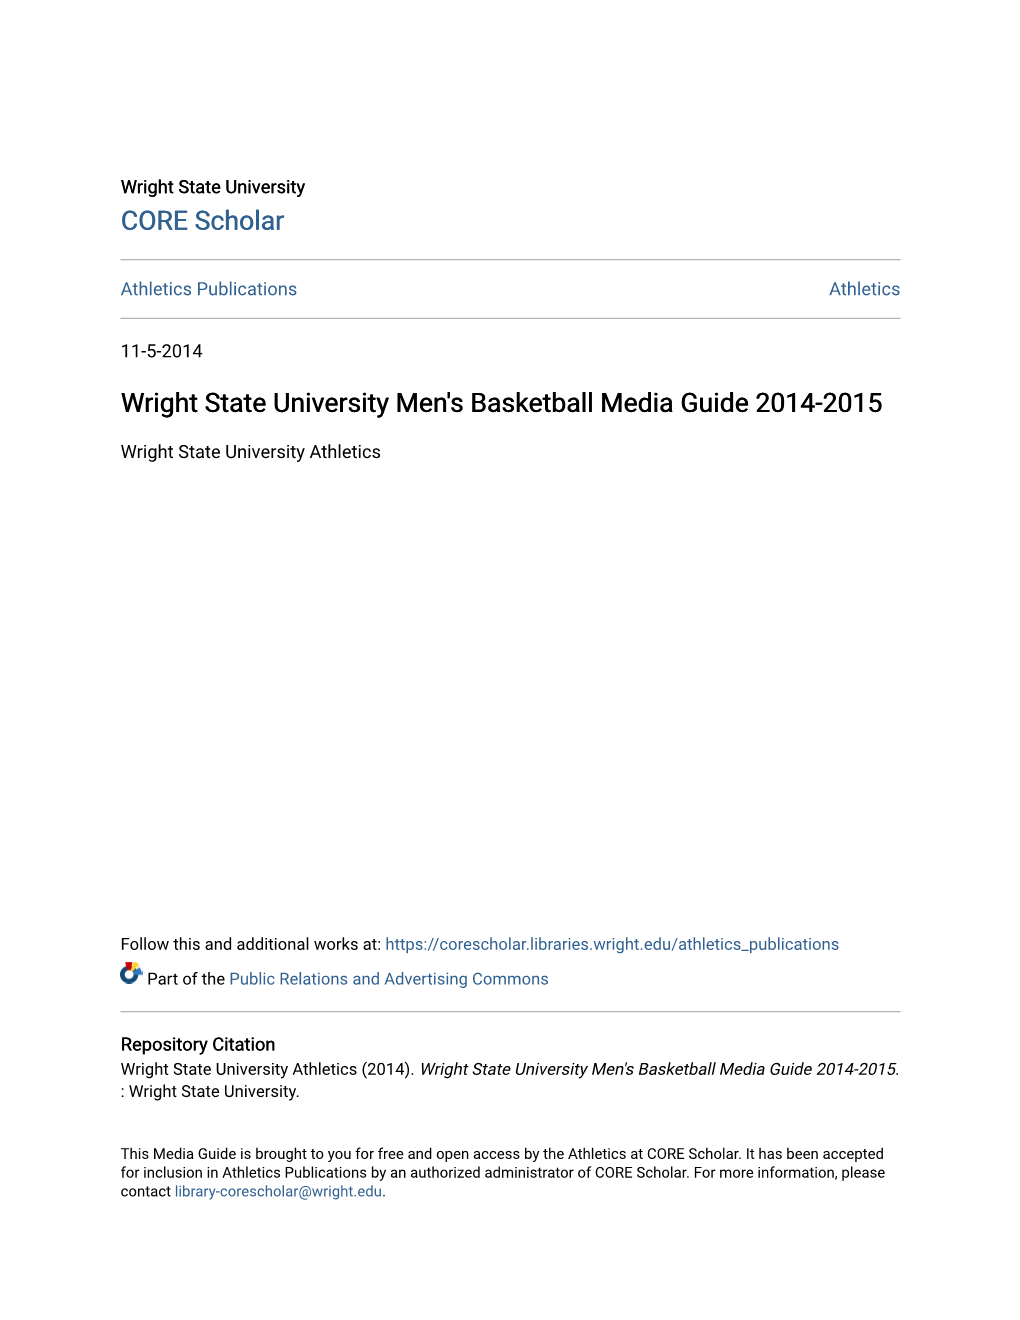 Wright State University Men's Basketball Media Guide 2014-2015